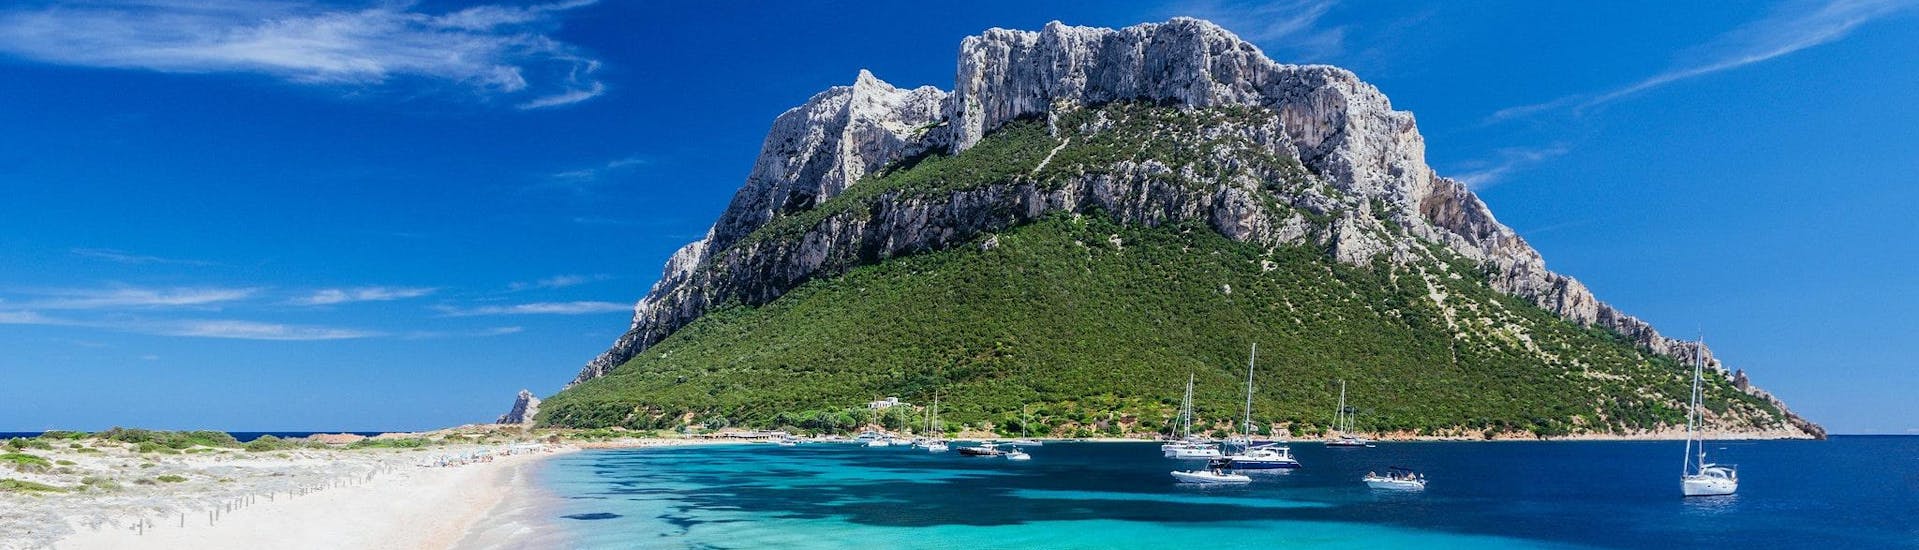 Blick auf die Insel Tavolara, die ein beliebtes Ziel für Bootstouren ab Olbia auf Sardinien ist.